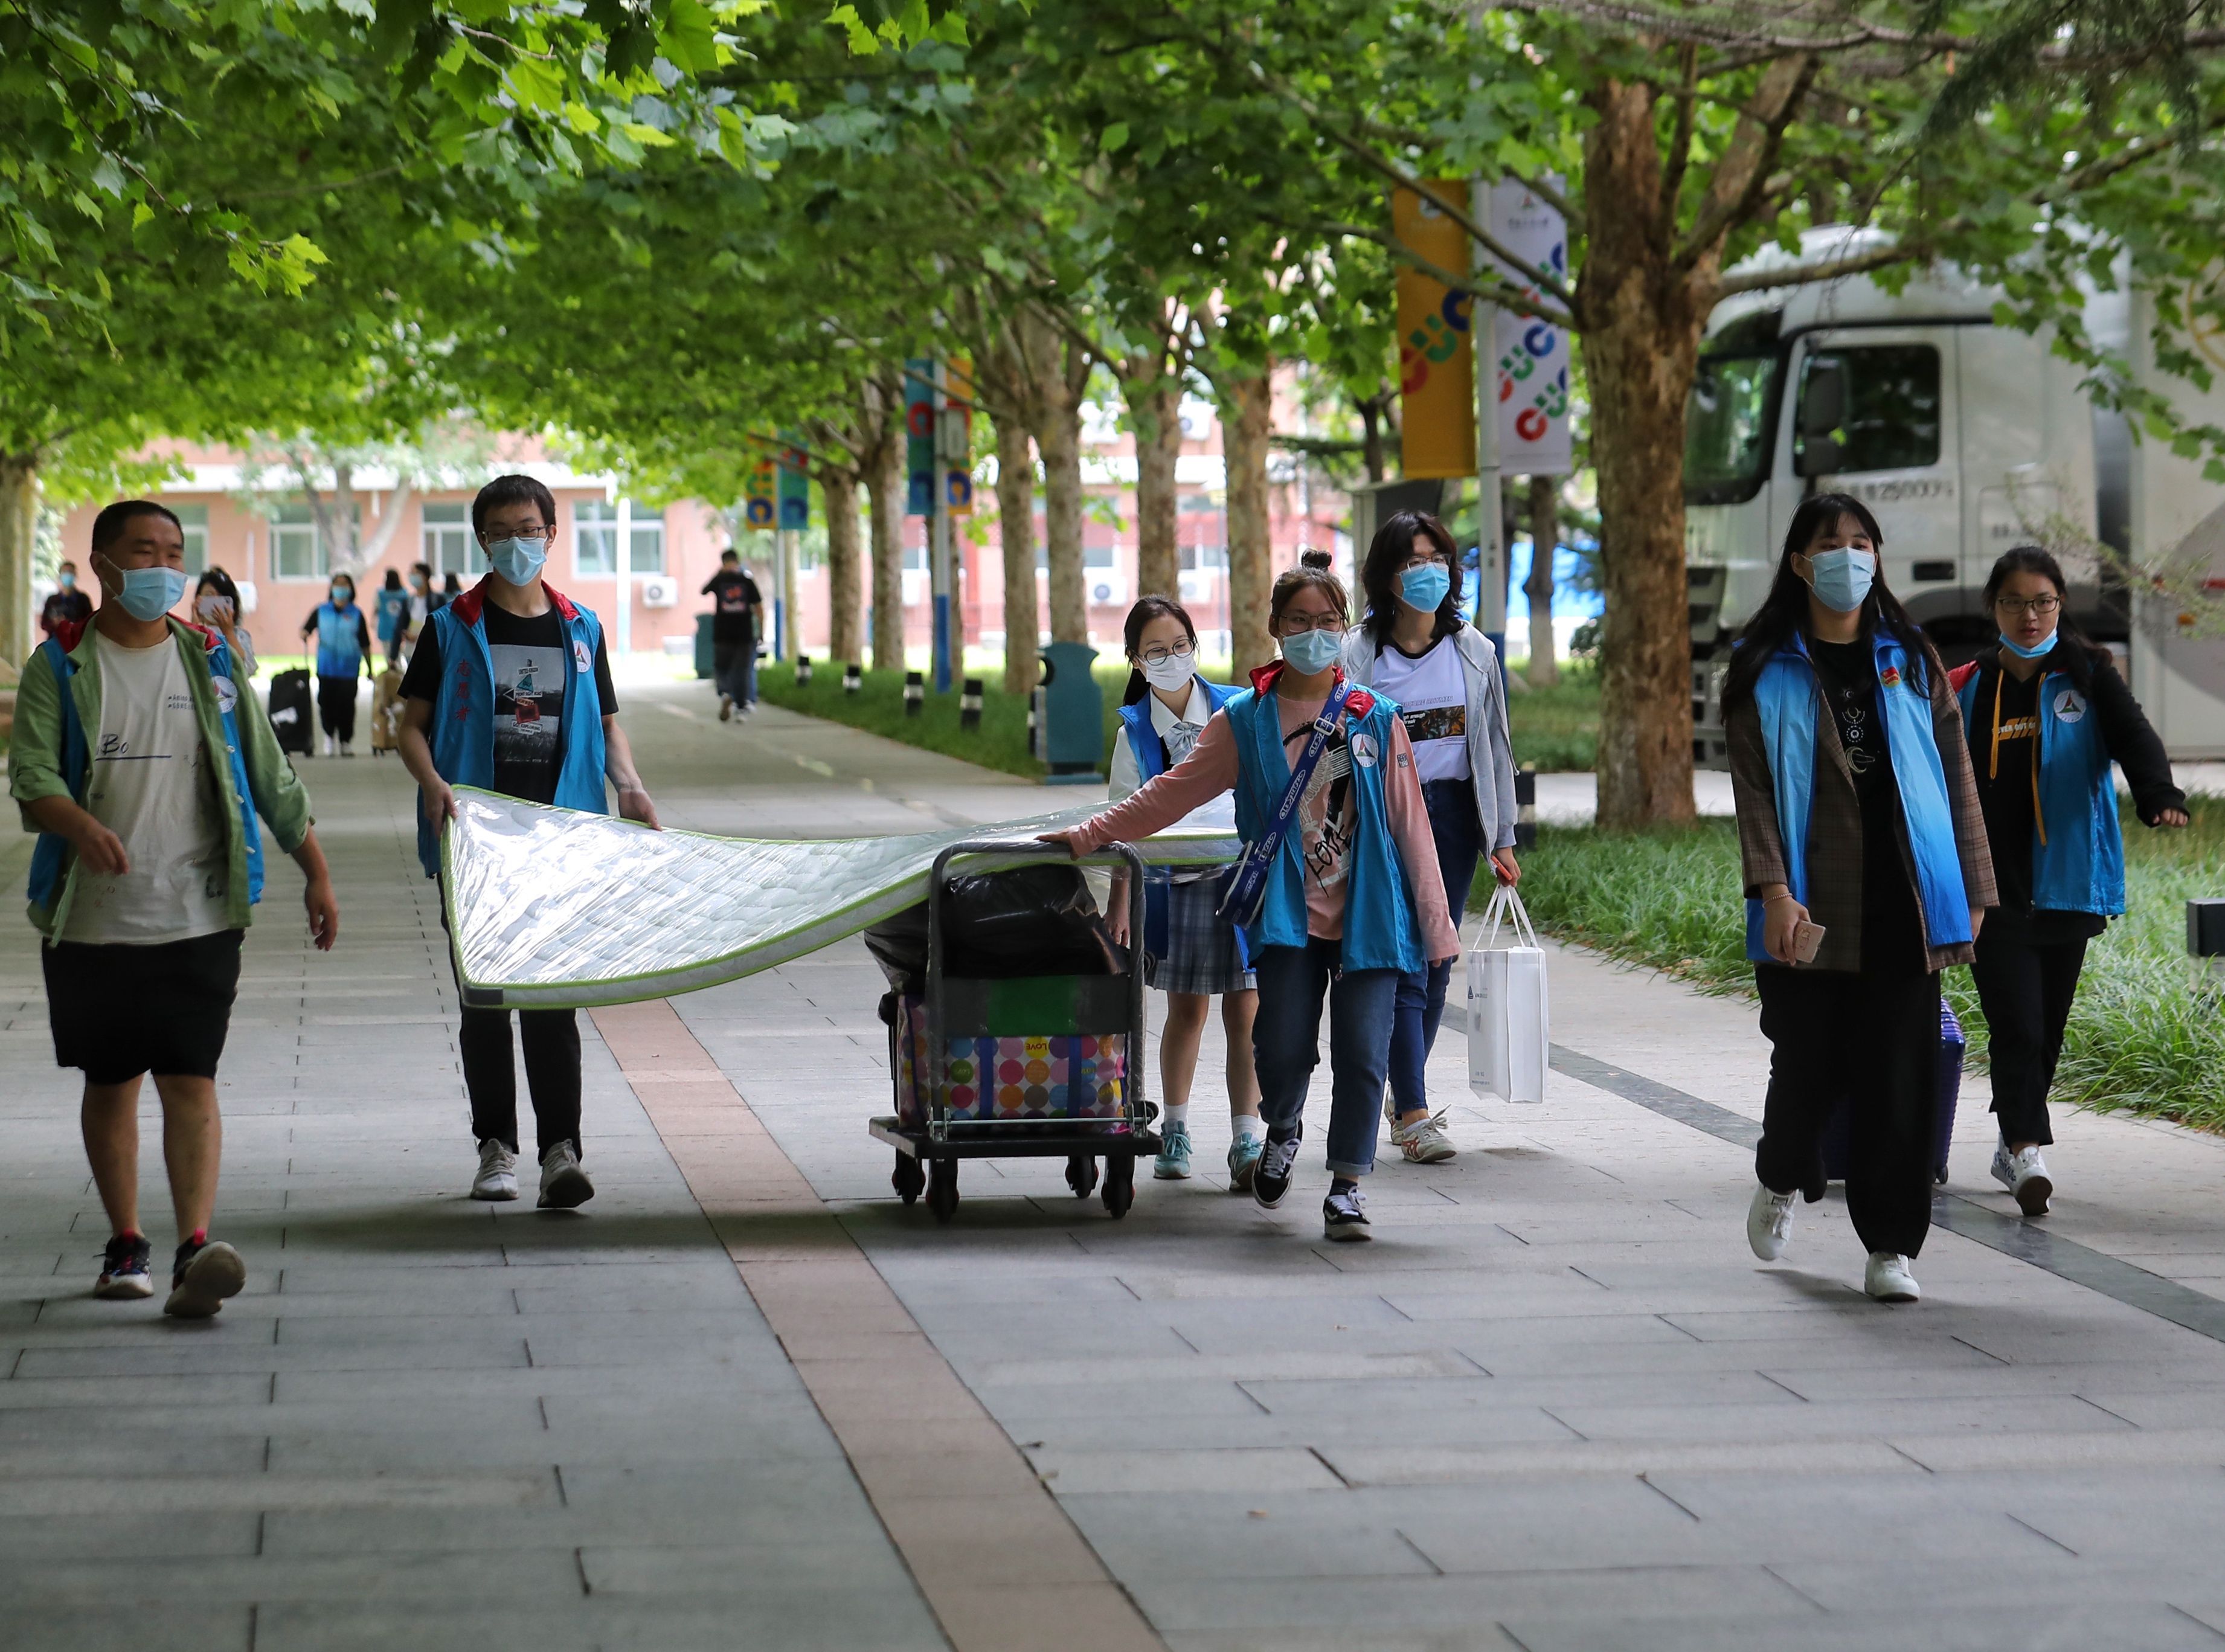 穿着蓝马甲的志愿者用小推车帮助新生运送行李和床垫。新京报记者 王贵彬 摄